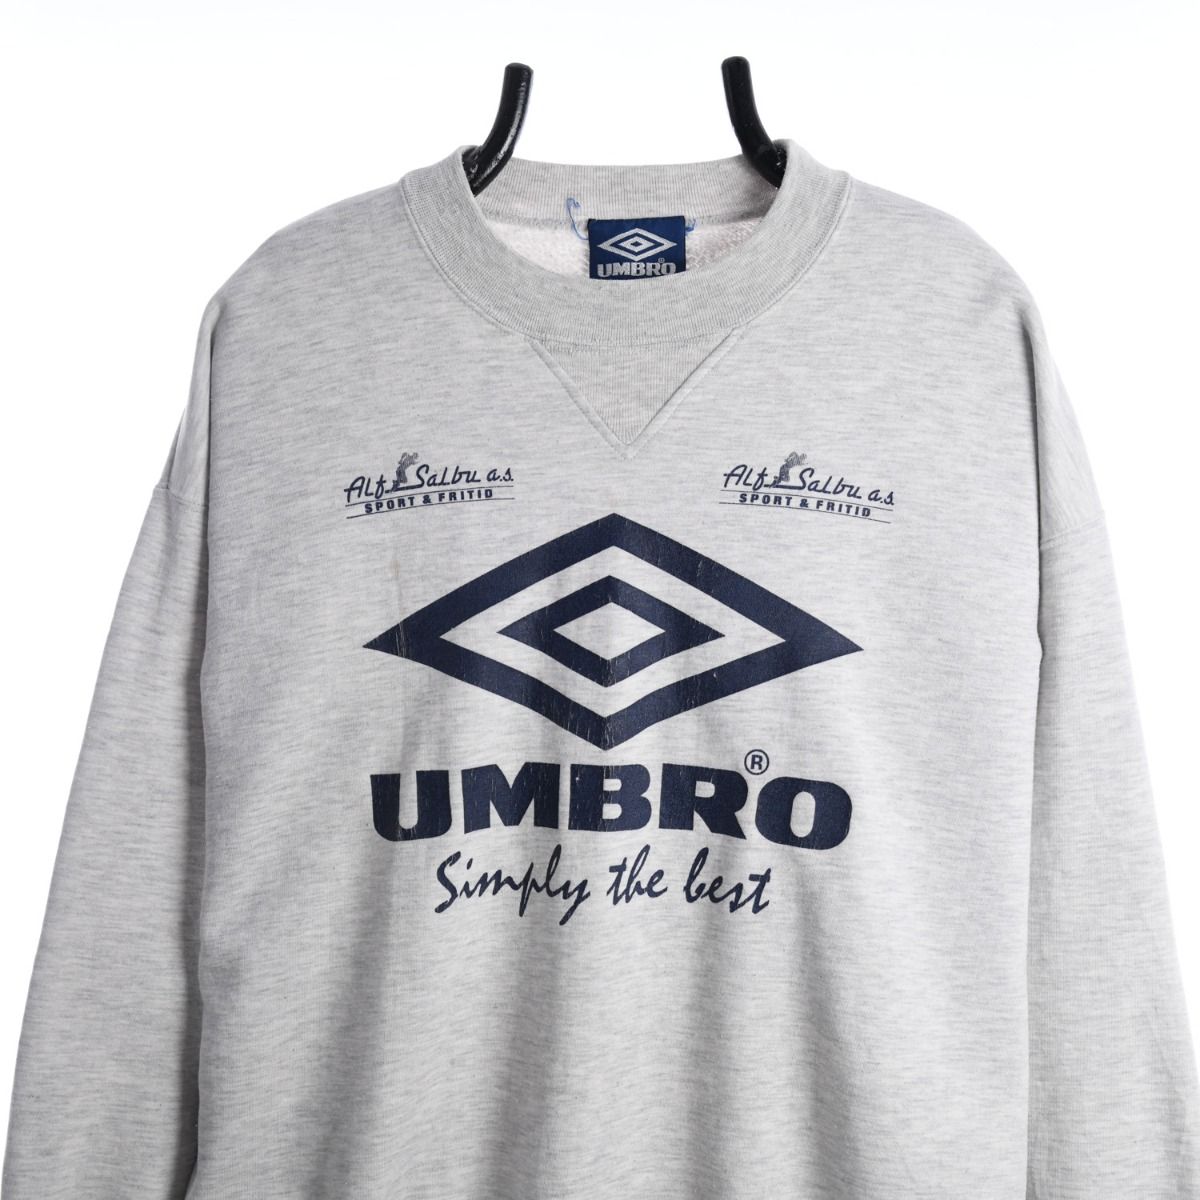 Umbro 1990s Classic Sweatshirt